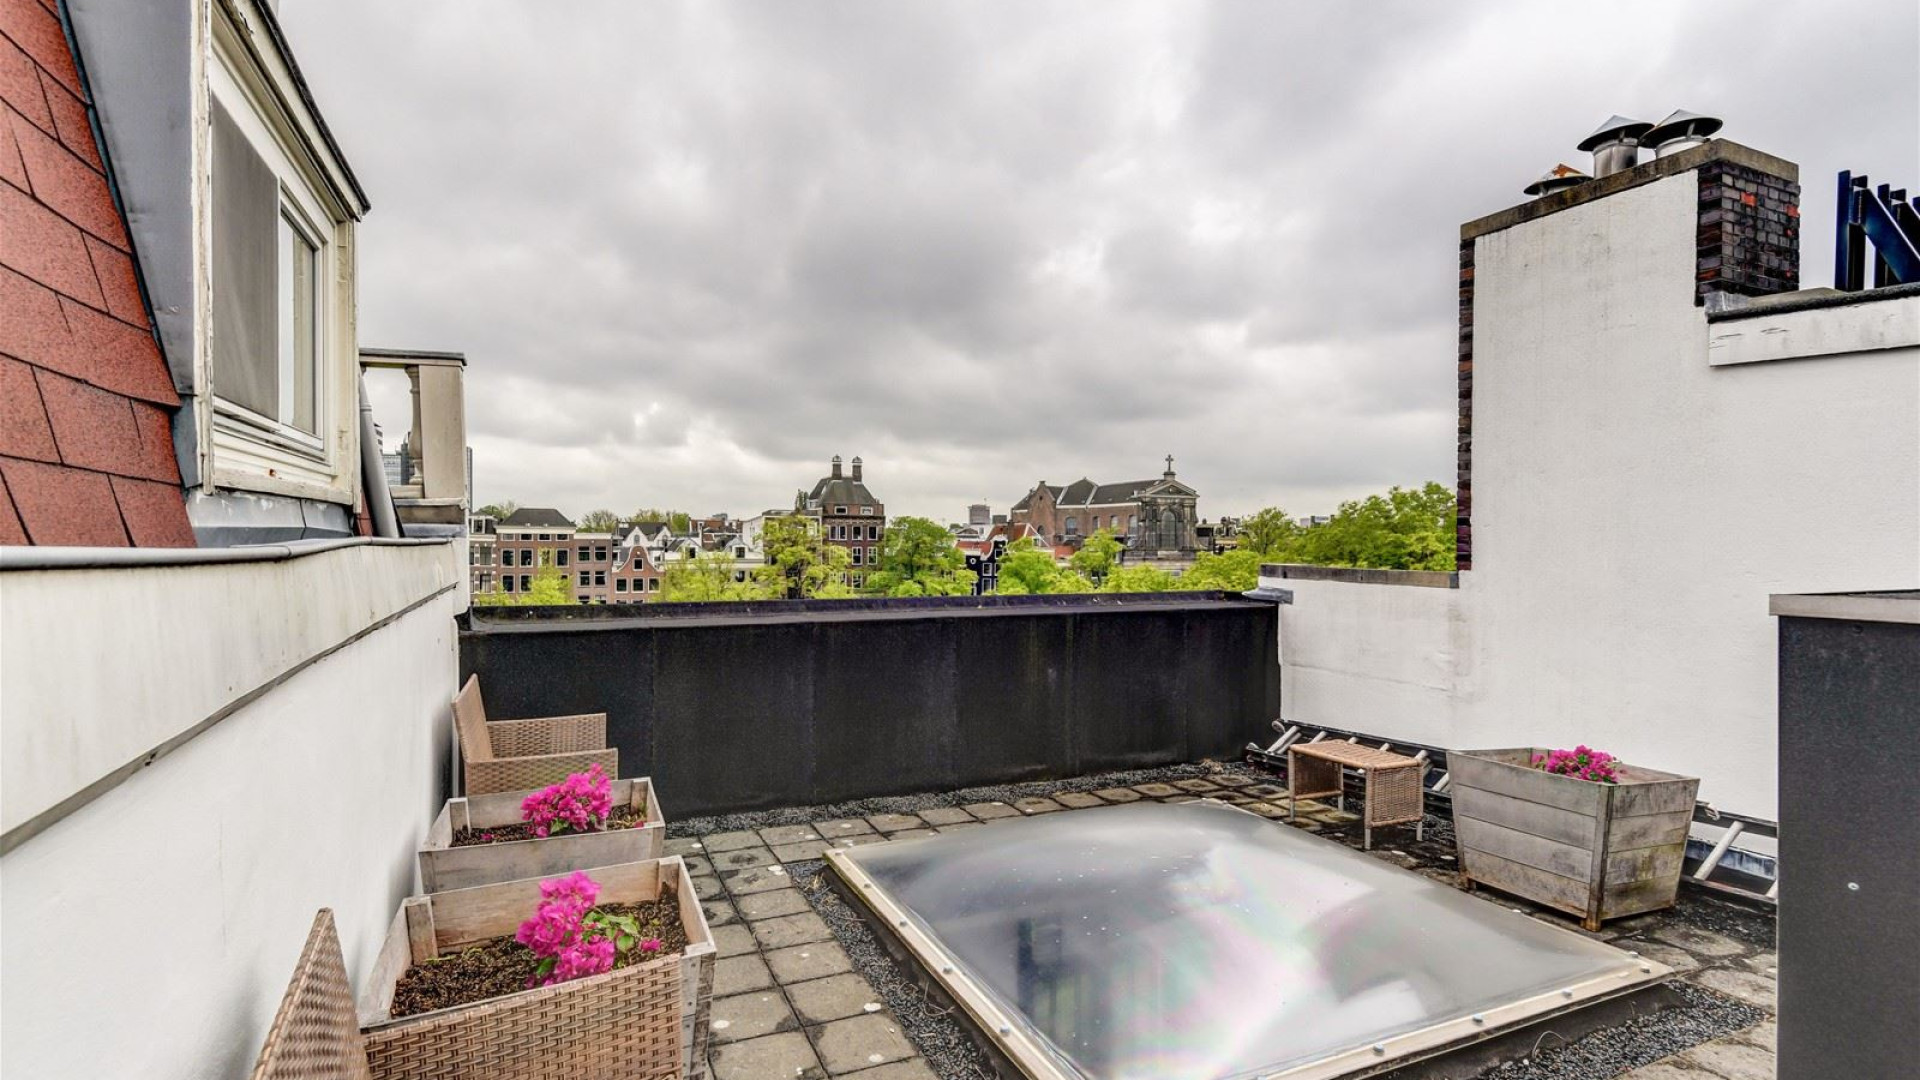 Youp van 't Hek koopt miljoenen euro's kostende stadsvilla in Amsterdam Centrum. Zie foto's. 34